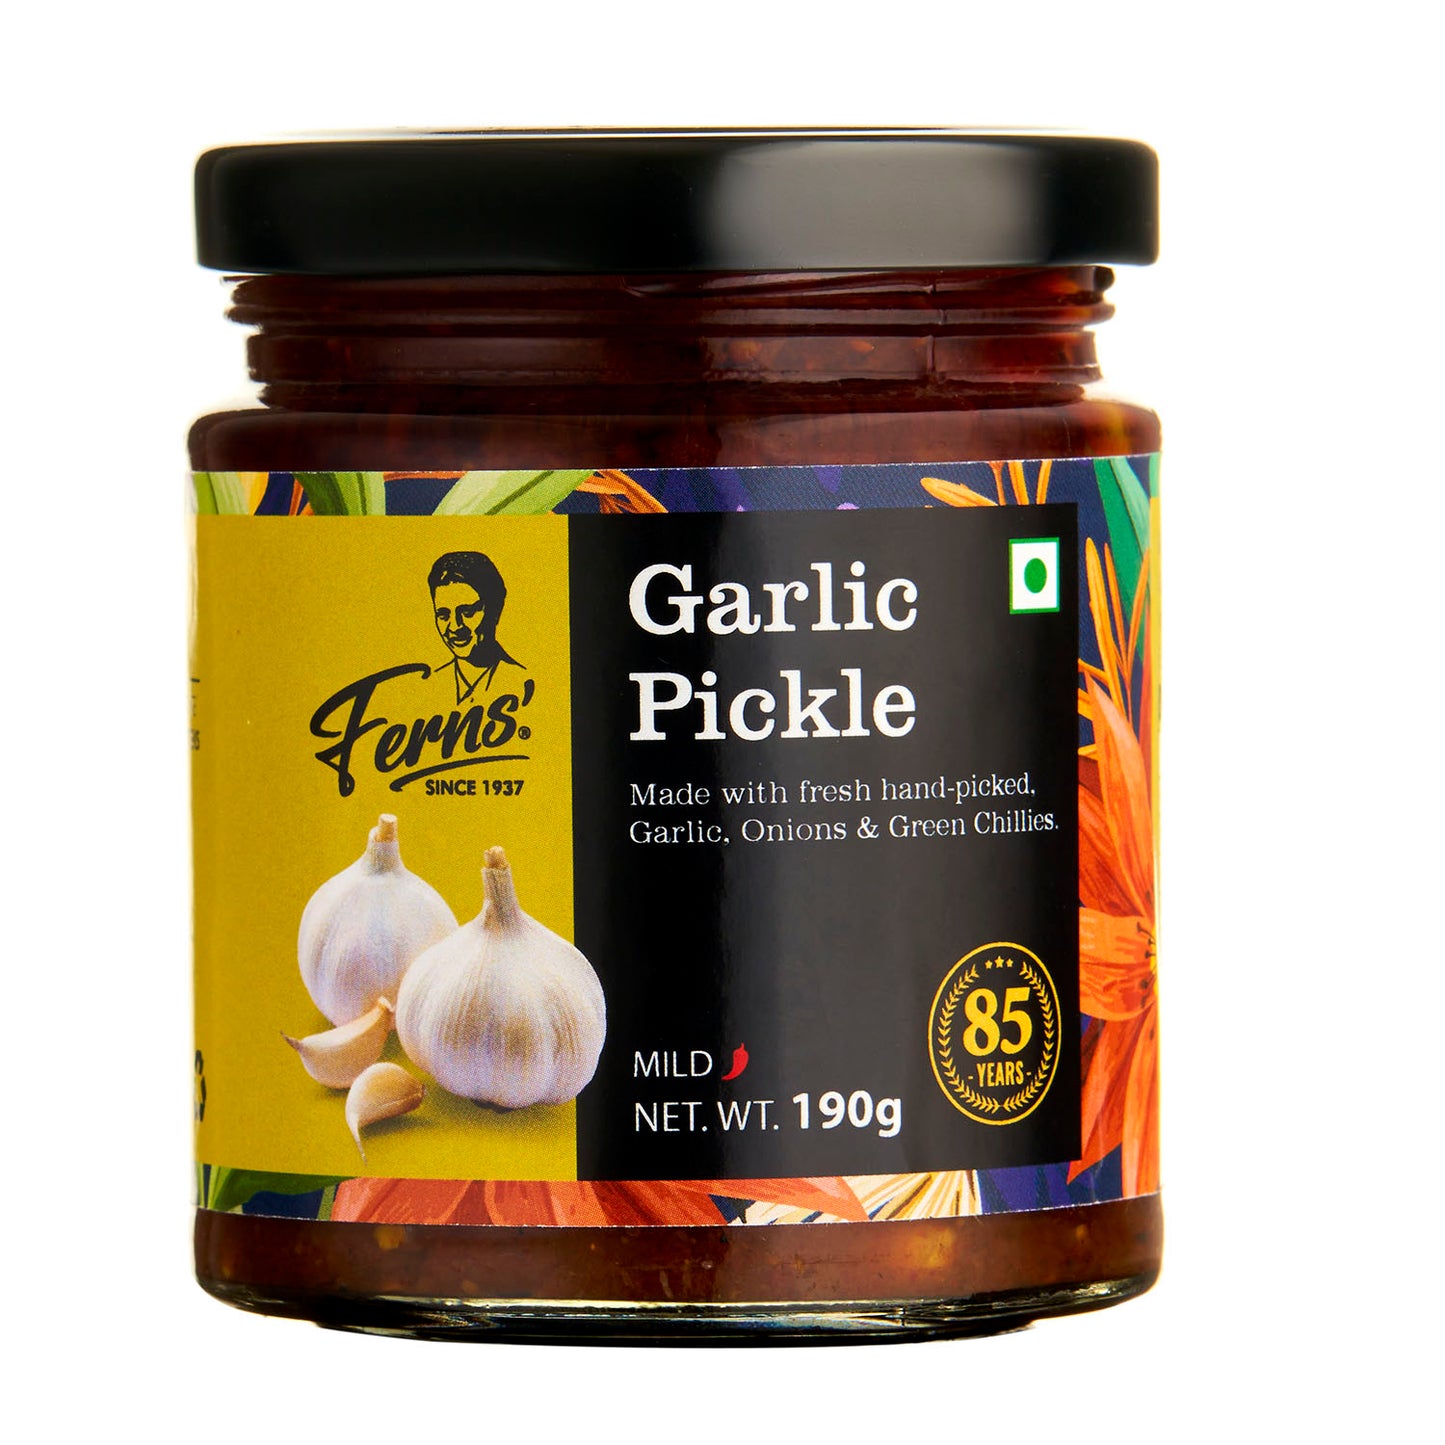 Ferns Garlic Pickle